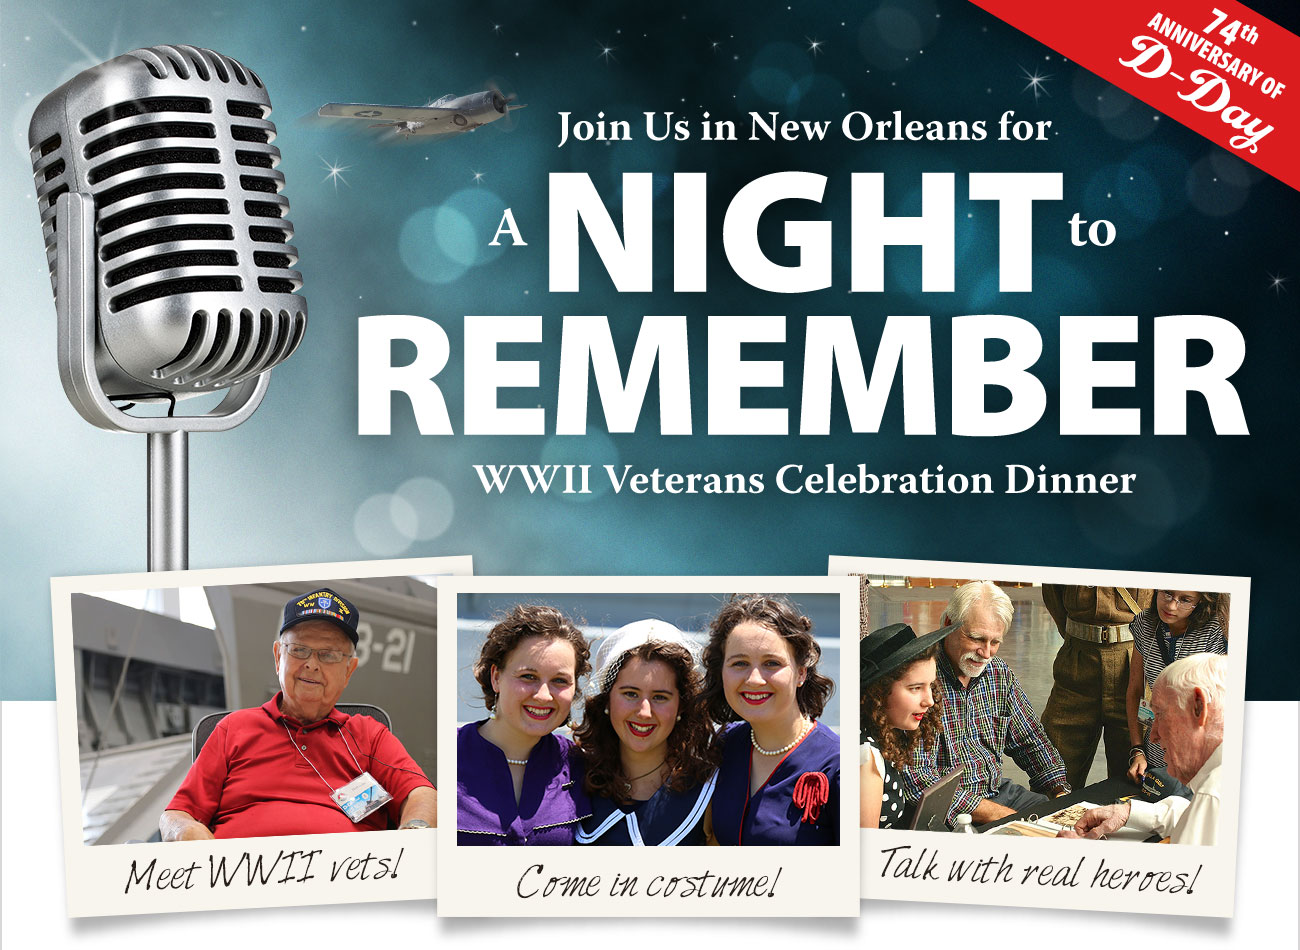 WWII Veterans Celebration Dinner!